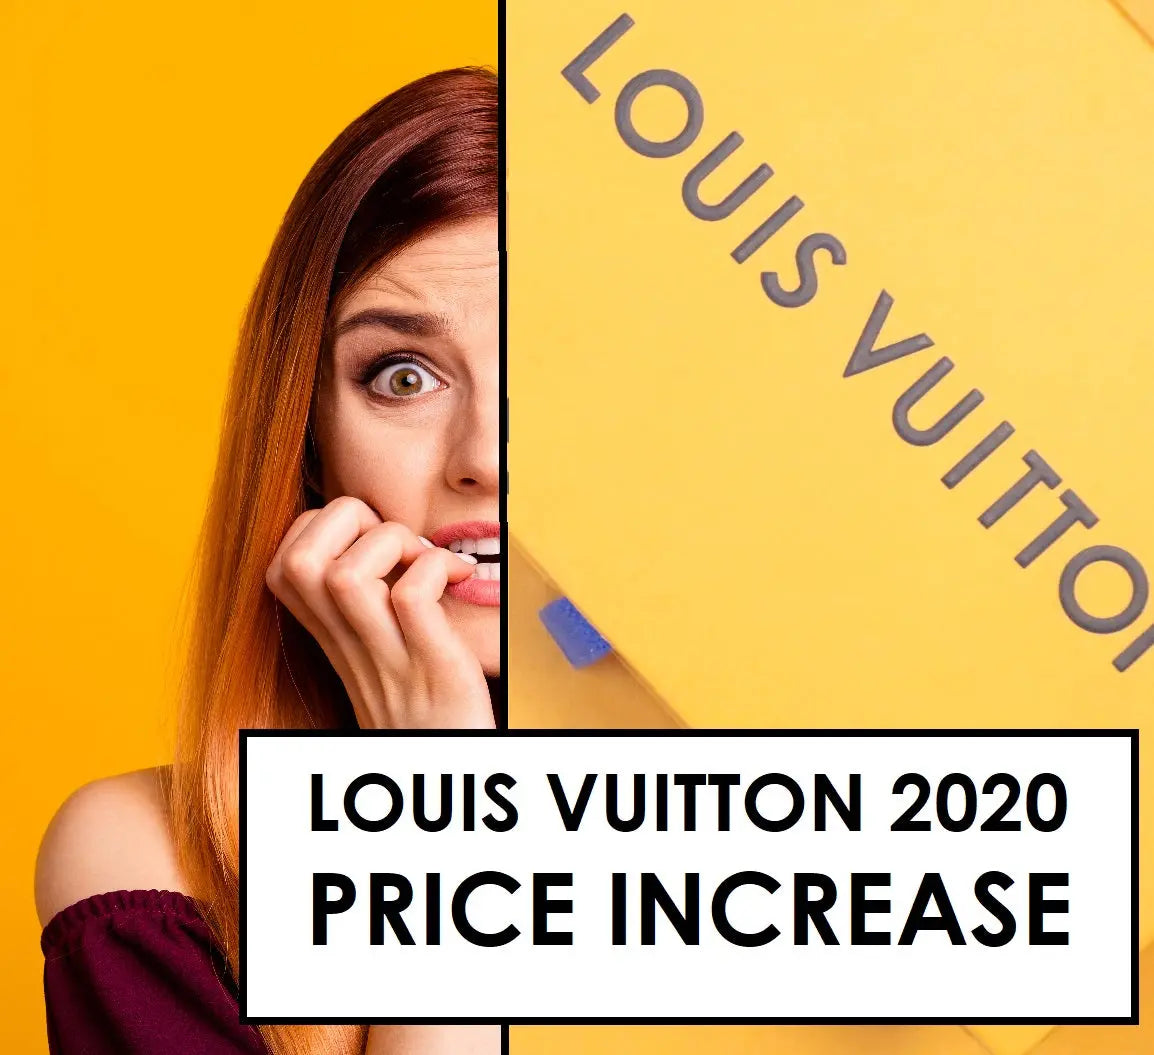 Louis Vuitton Comparison  Reverse Monogram Rosalie vs Monogram